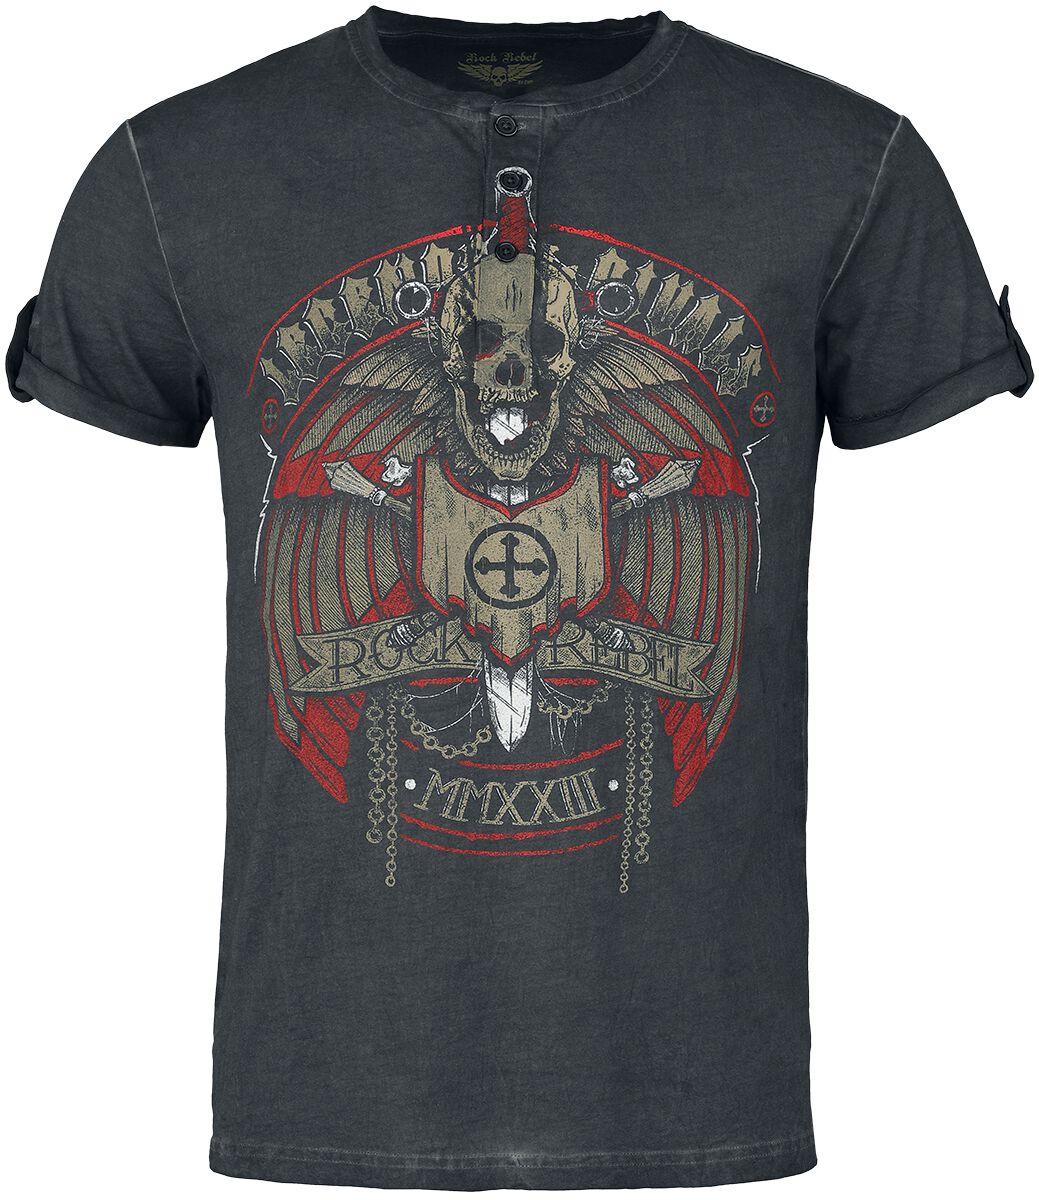 Rock Rebel by EMP - Rock T-Shirt - T-Shirt im Vintage Look - S bis L - für Männer - Größe S - grau